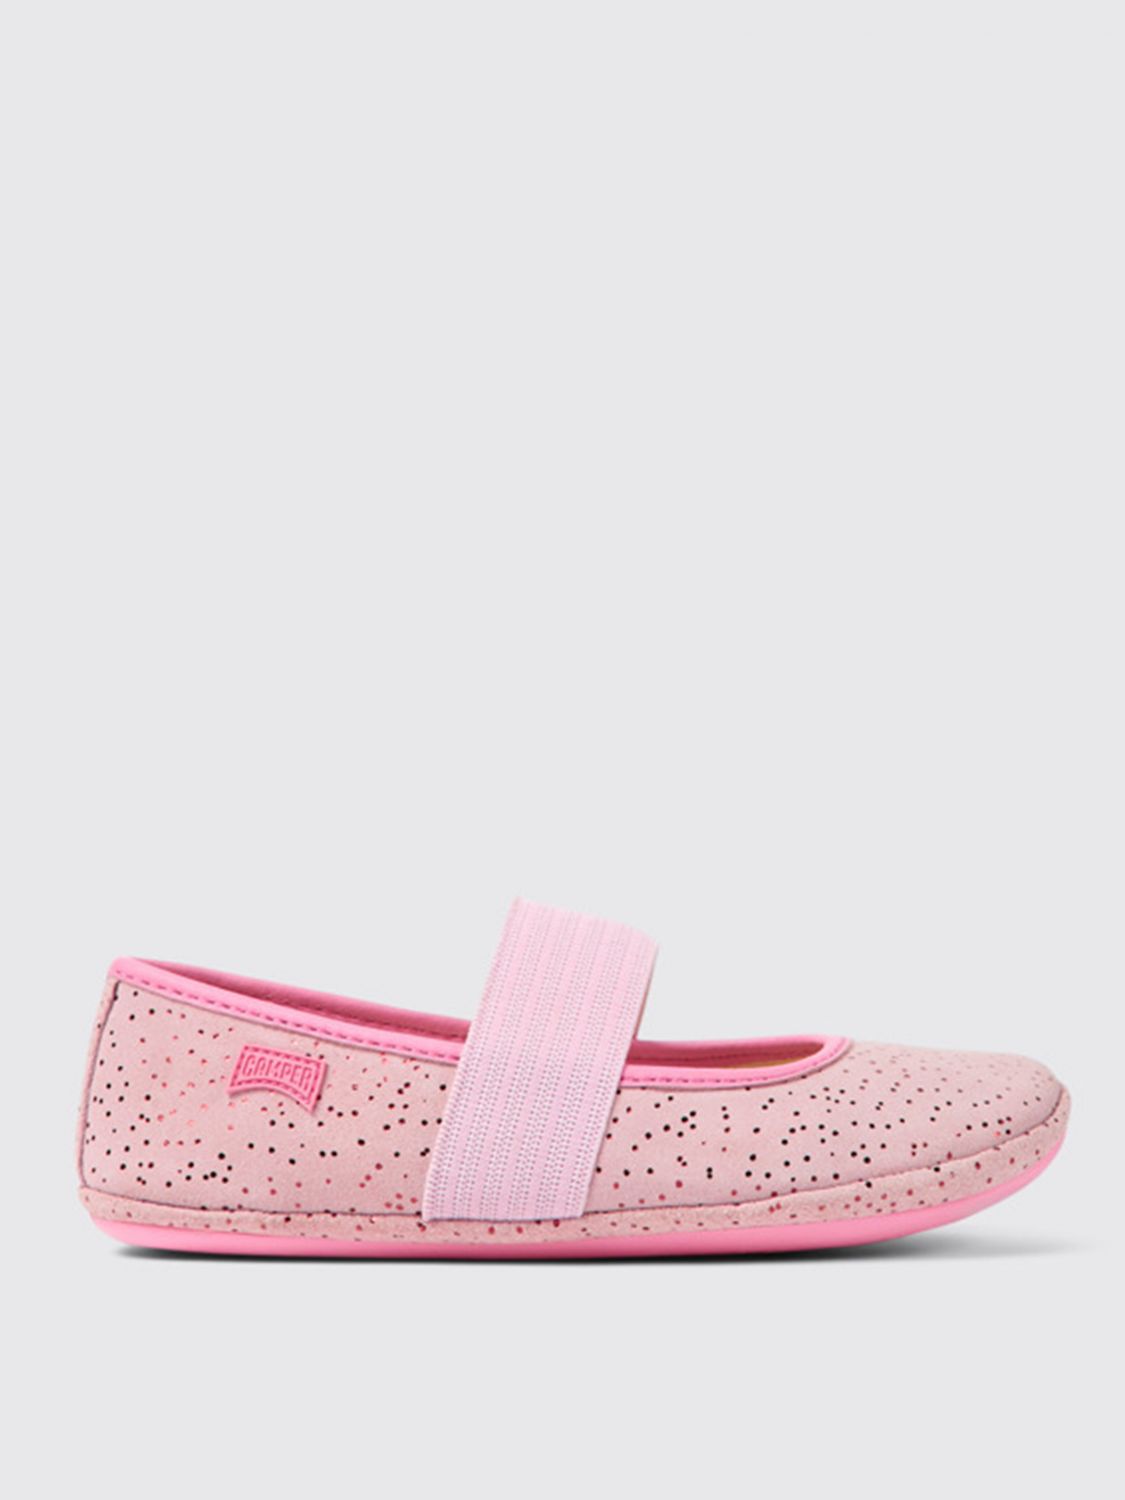 Camper Shoes  Kids Color Pink